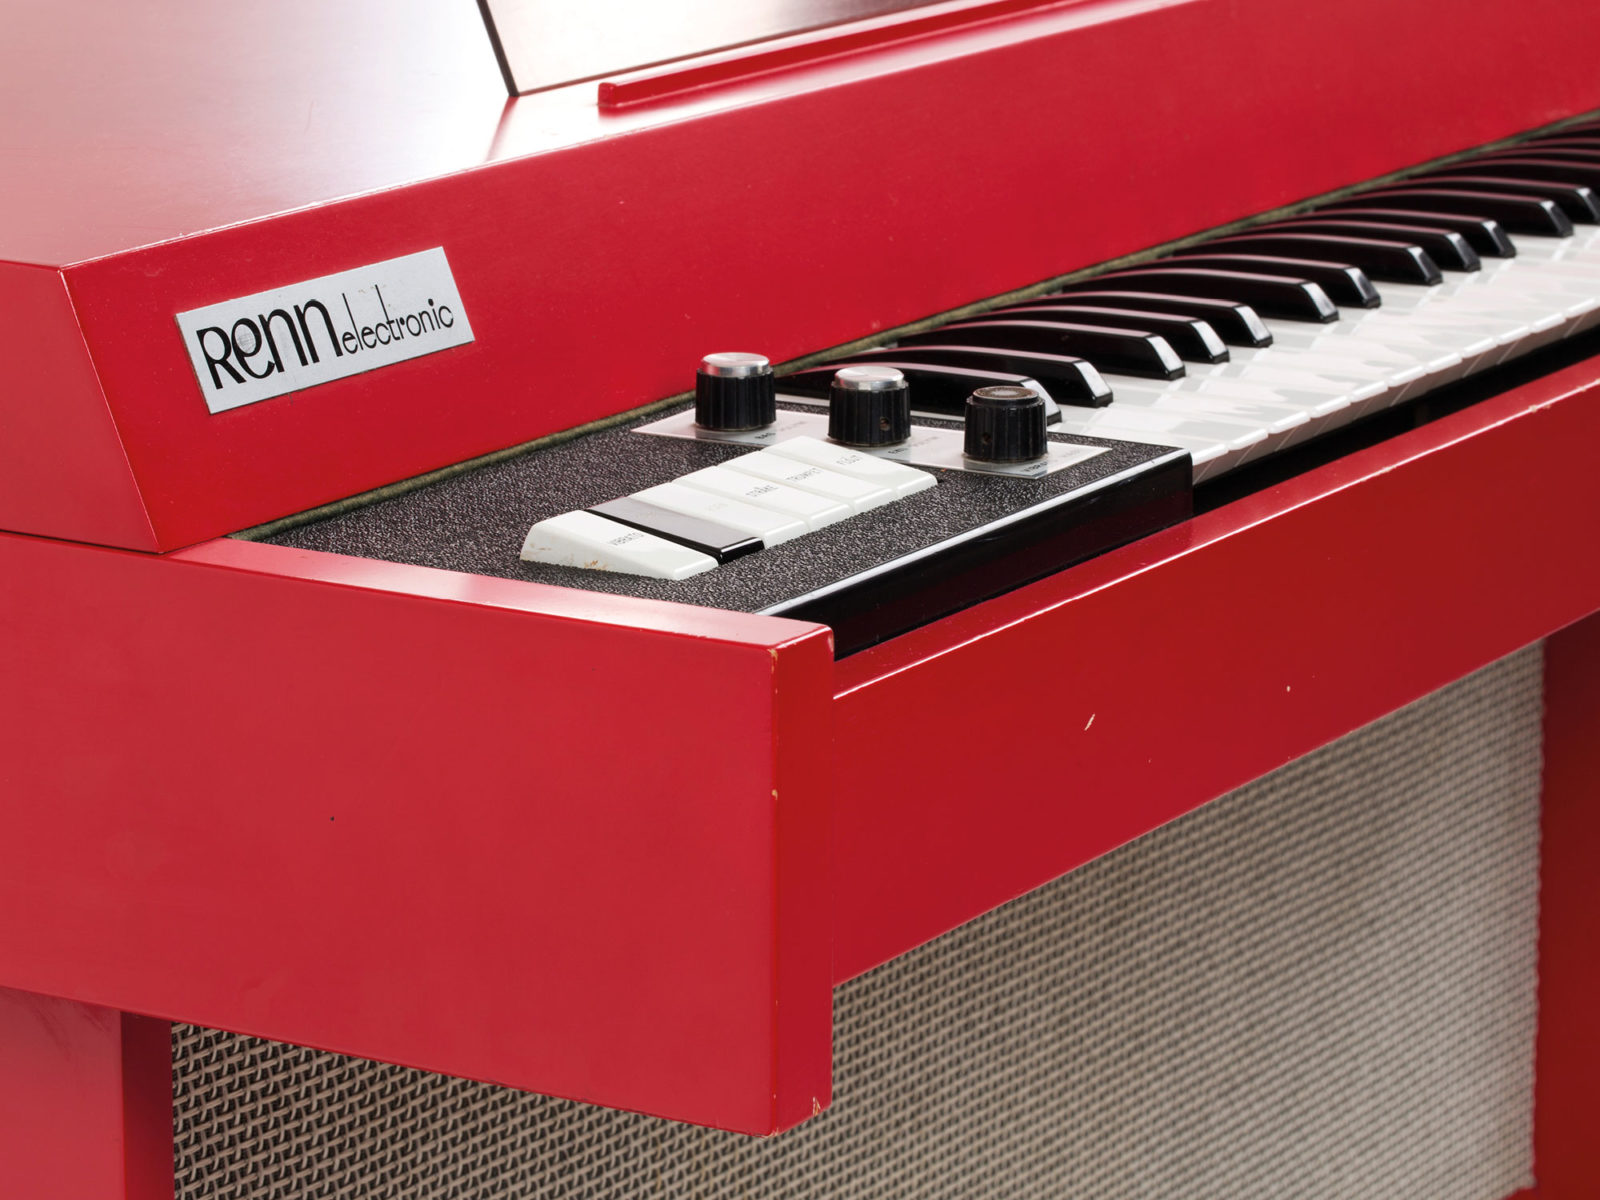 Gros-plan sur un piano rouge marqué « RENN electronic ».